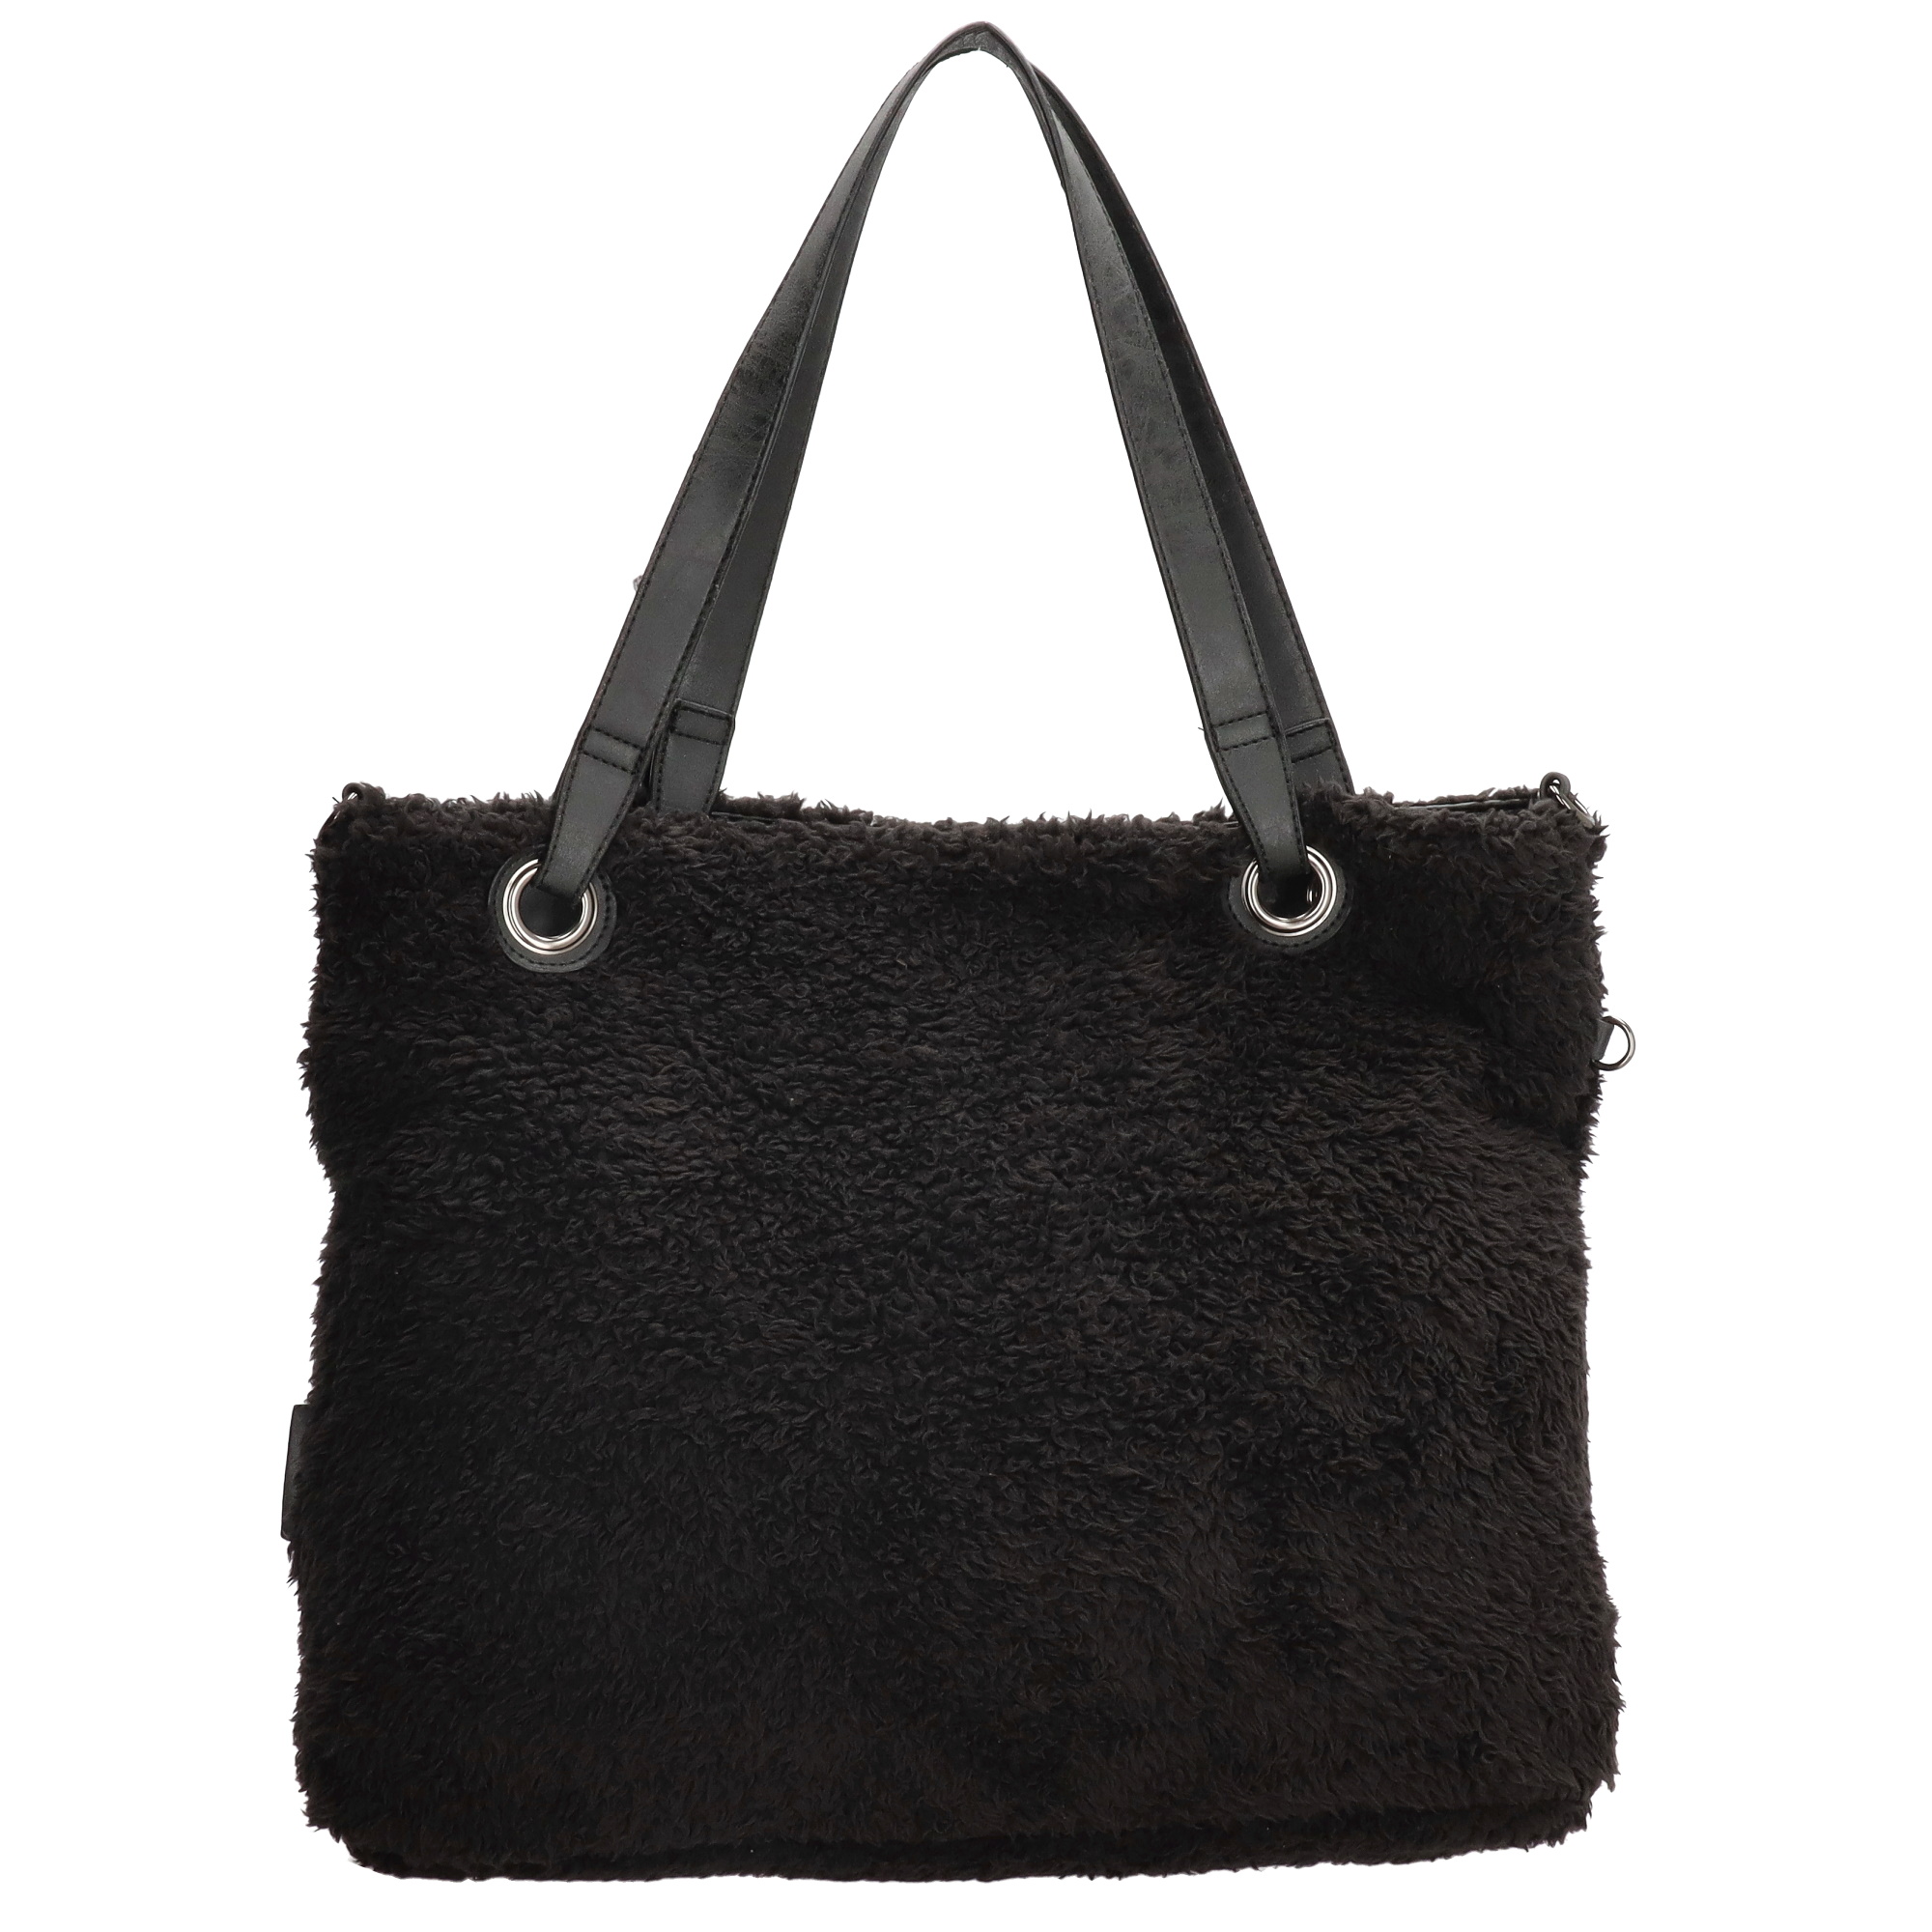 Stor handväska i teddymaterial med extra liten väska, svart väska